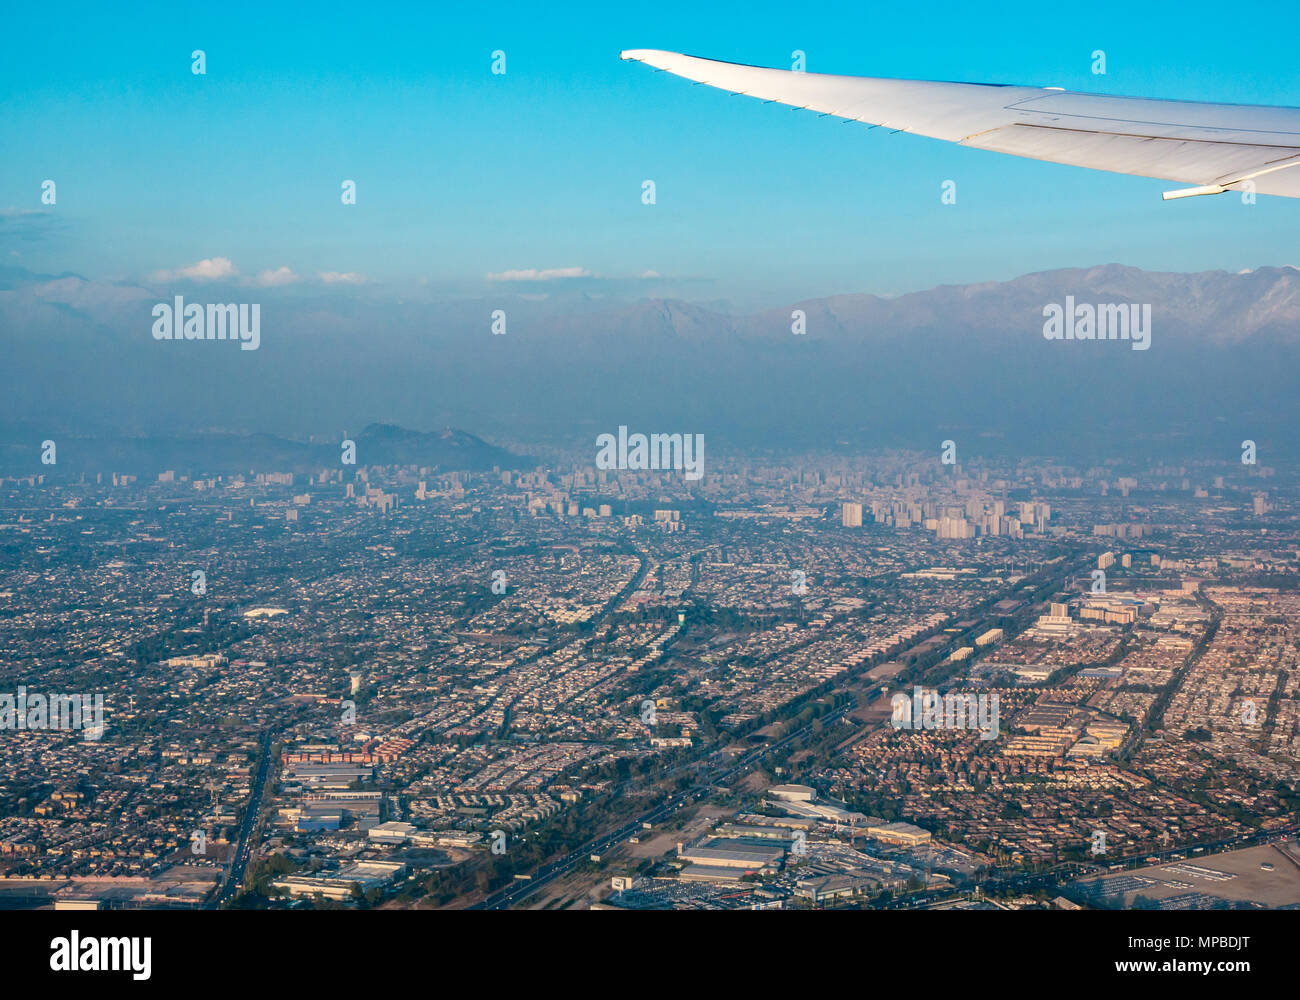 Vue de dessus de Santiago, Chili prises à partir de la fenêtre de l'avion avec l'autoroute Costanera Norte et colline de San Cristobal avec visible de smog Banque D'Images